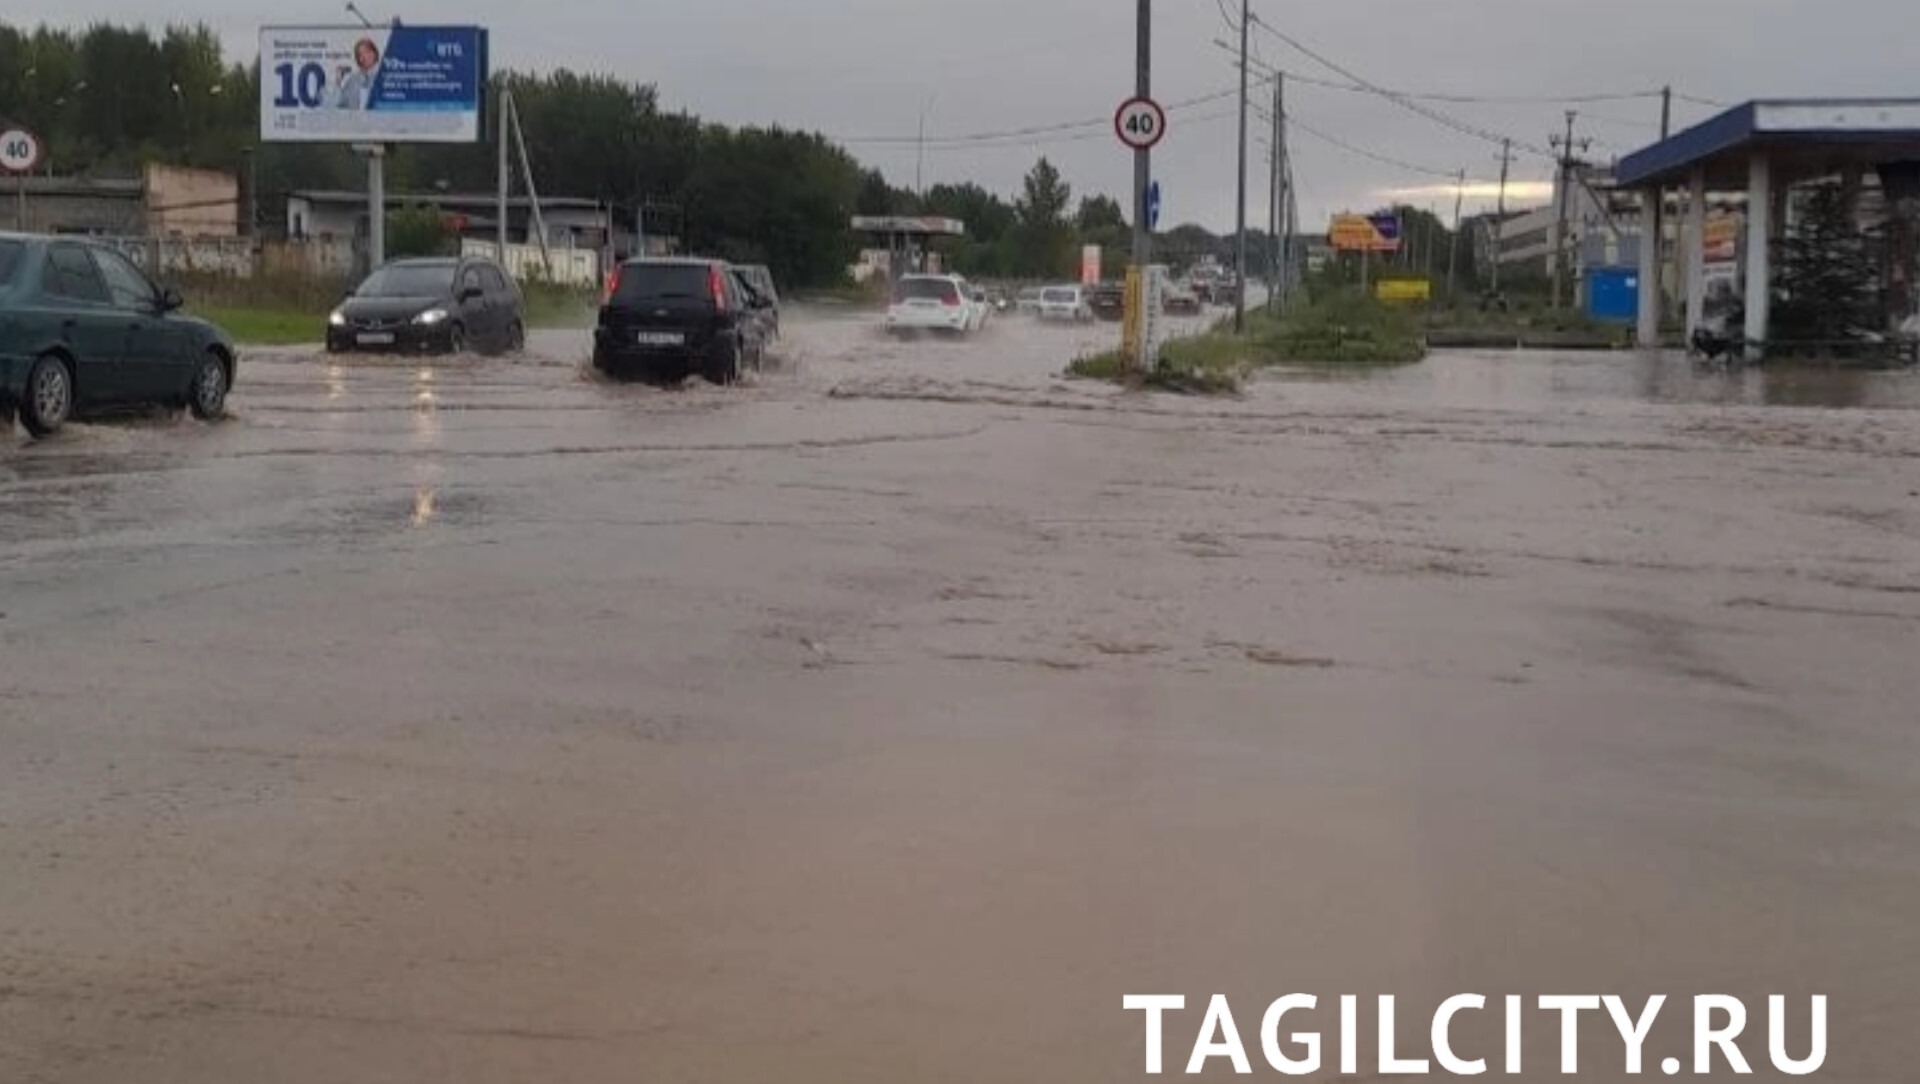 Трамваи перестали ездить на Вагонку из-за затопления Восточного шоссе в Нижнем Тагиле